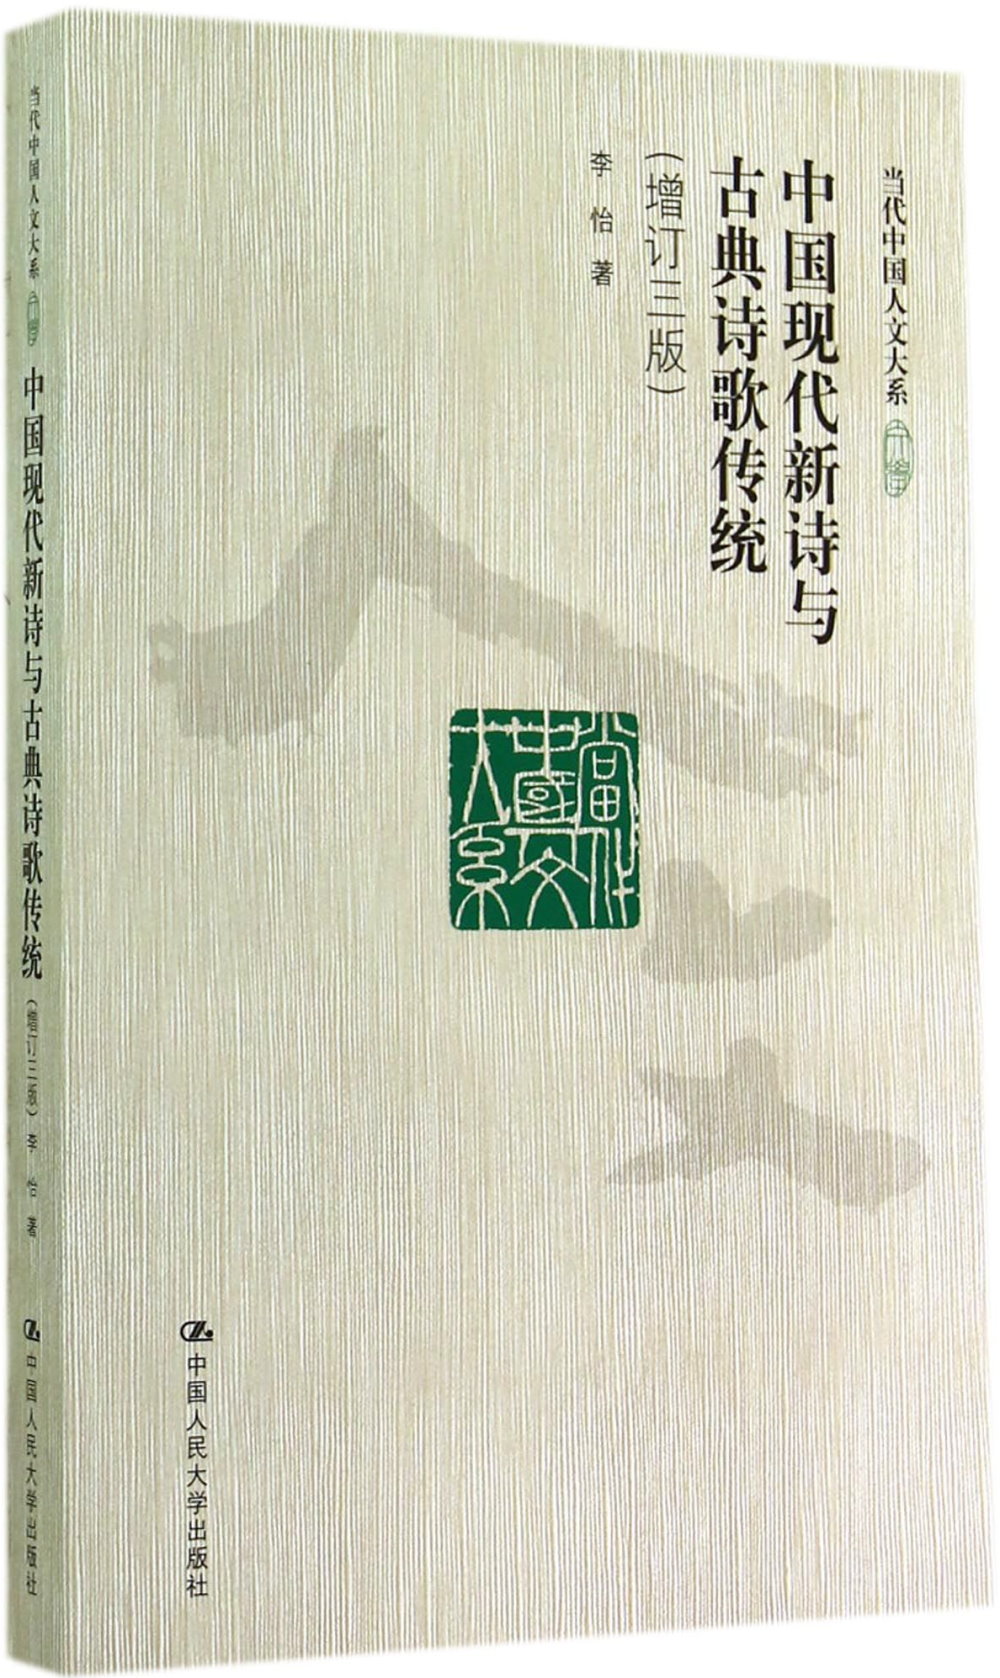 中國現代新詩與古典詩歌傳統（增訂三版）